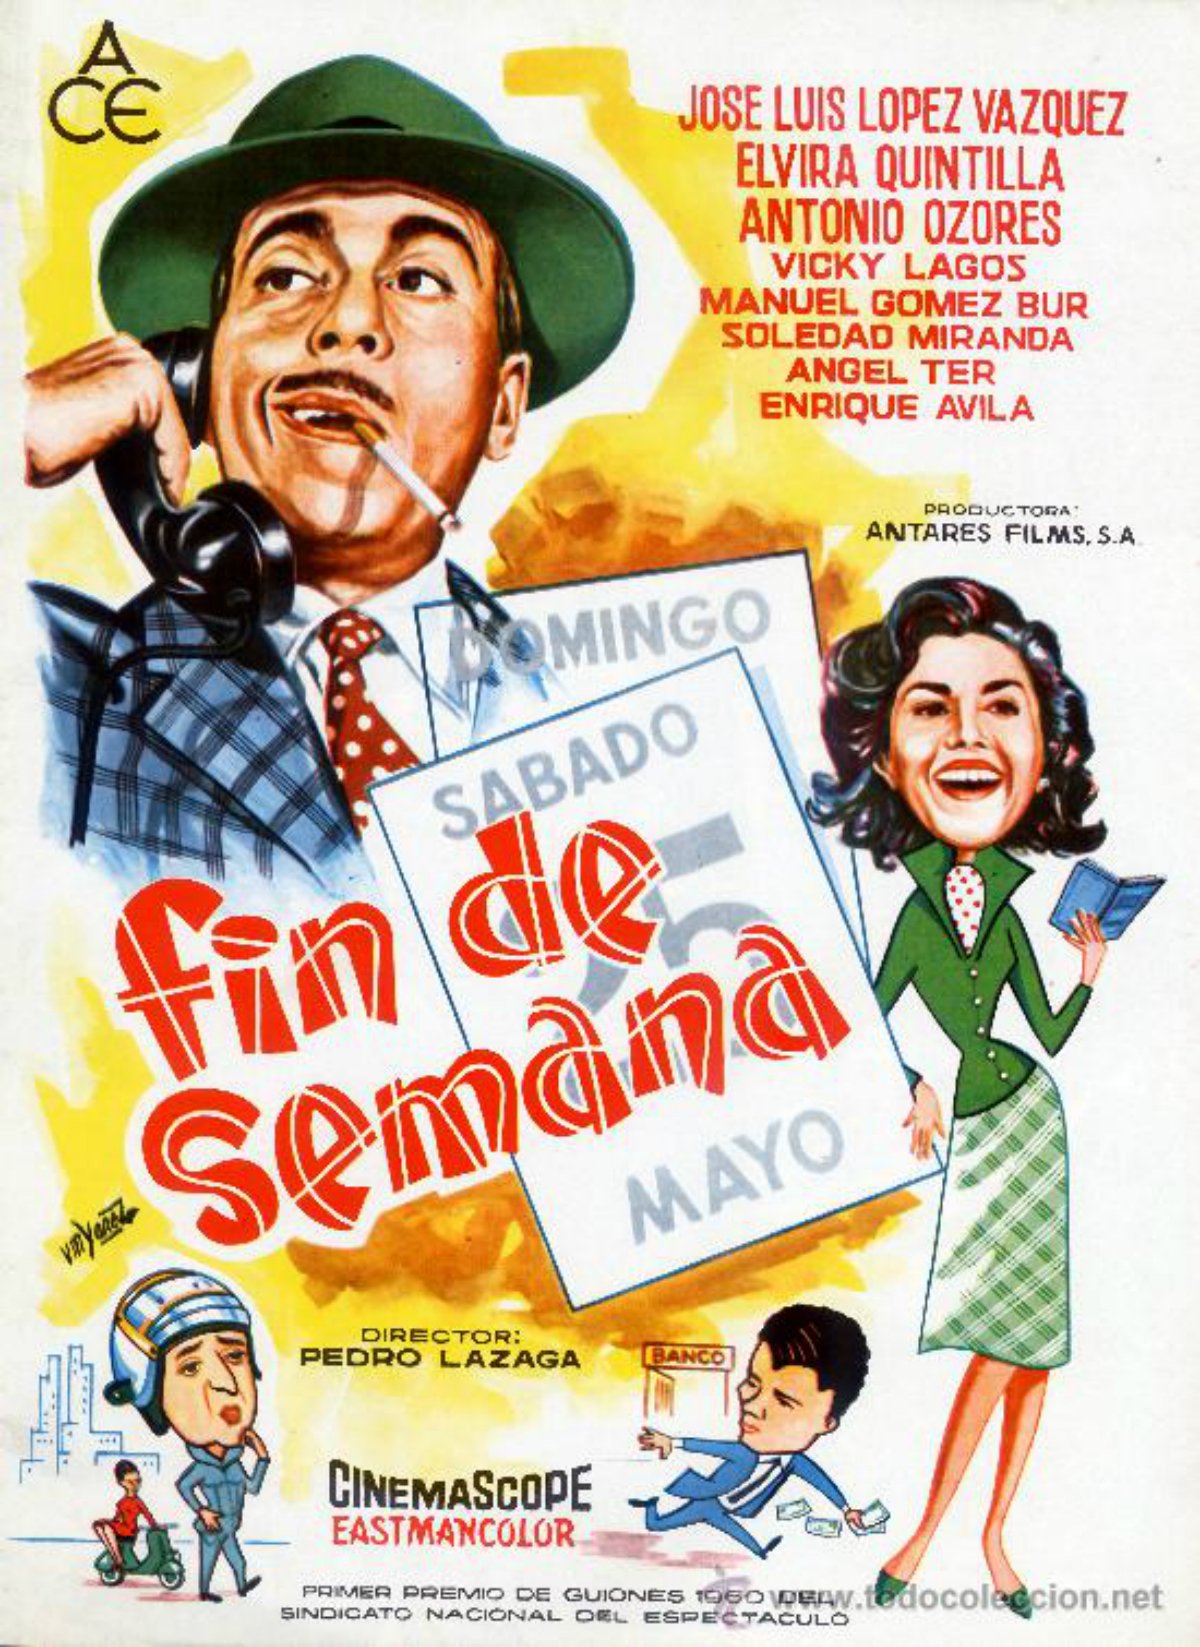 Испанские комедии лучшие